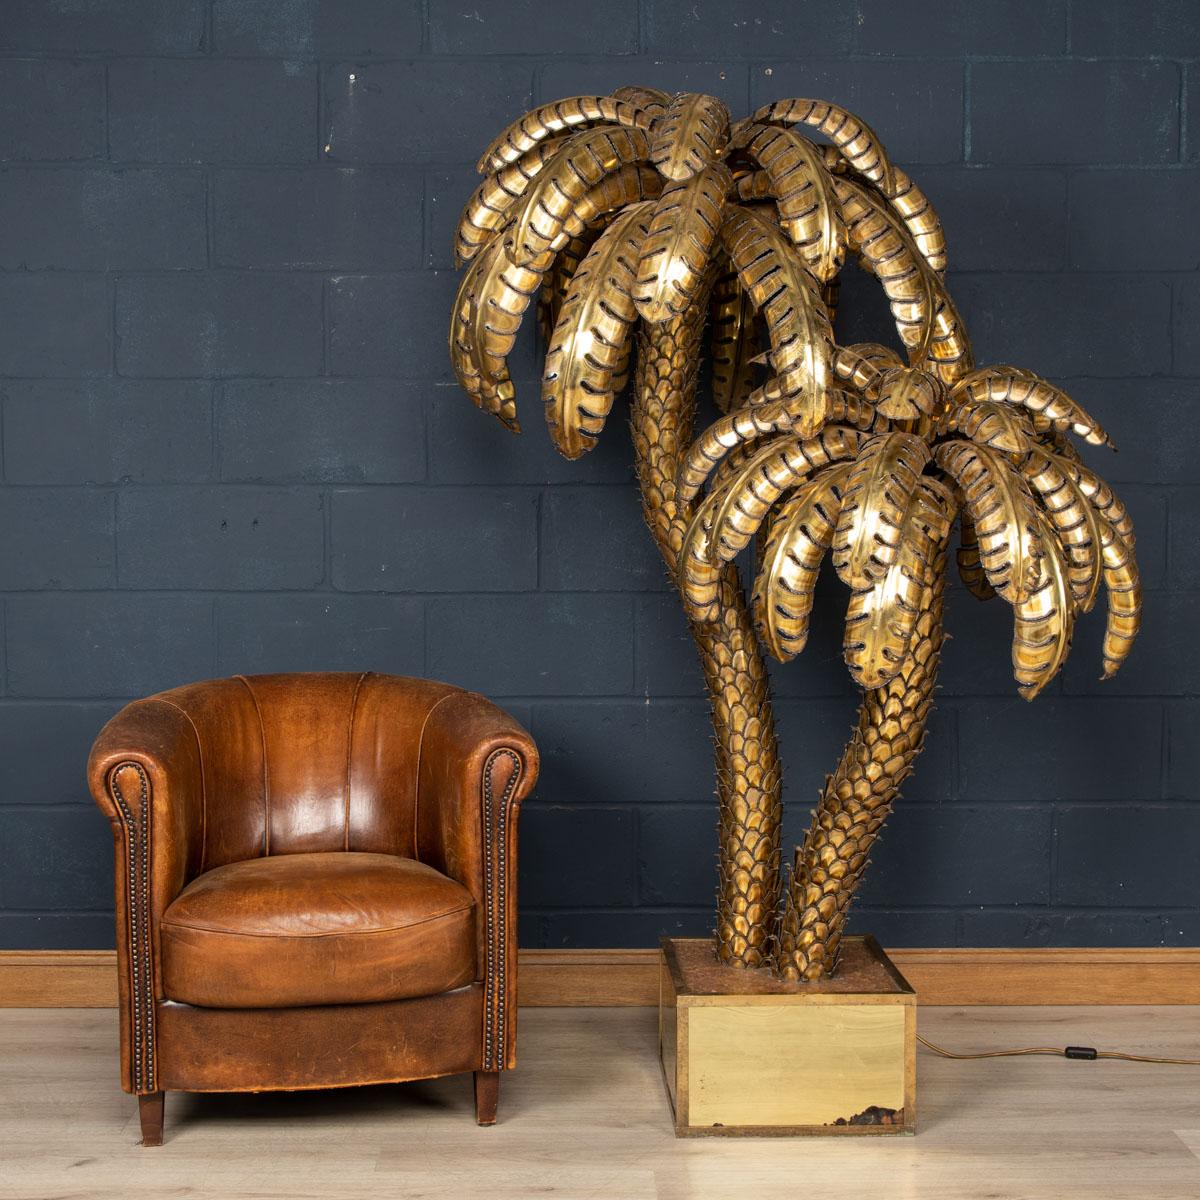 Un grand et très rare lampadaire en forme de palmier de la Maison Jansen datant des années 1960/70, avec deux points lumineux. Les palmes coupées à la main et le tronc sont façonnés à partir de feuilles de laiton qui se chevauchent. De proportions